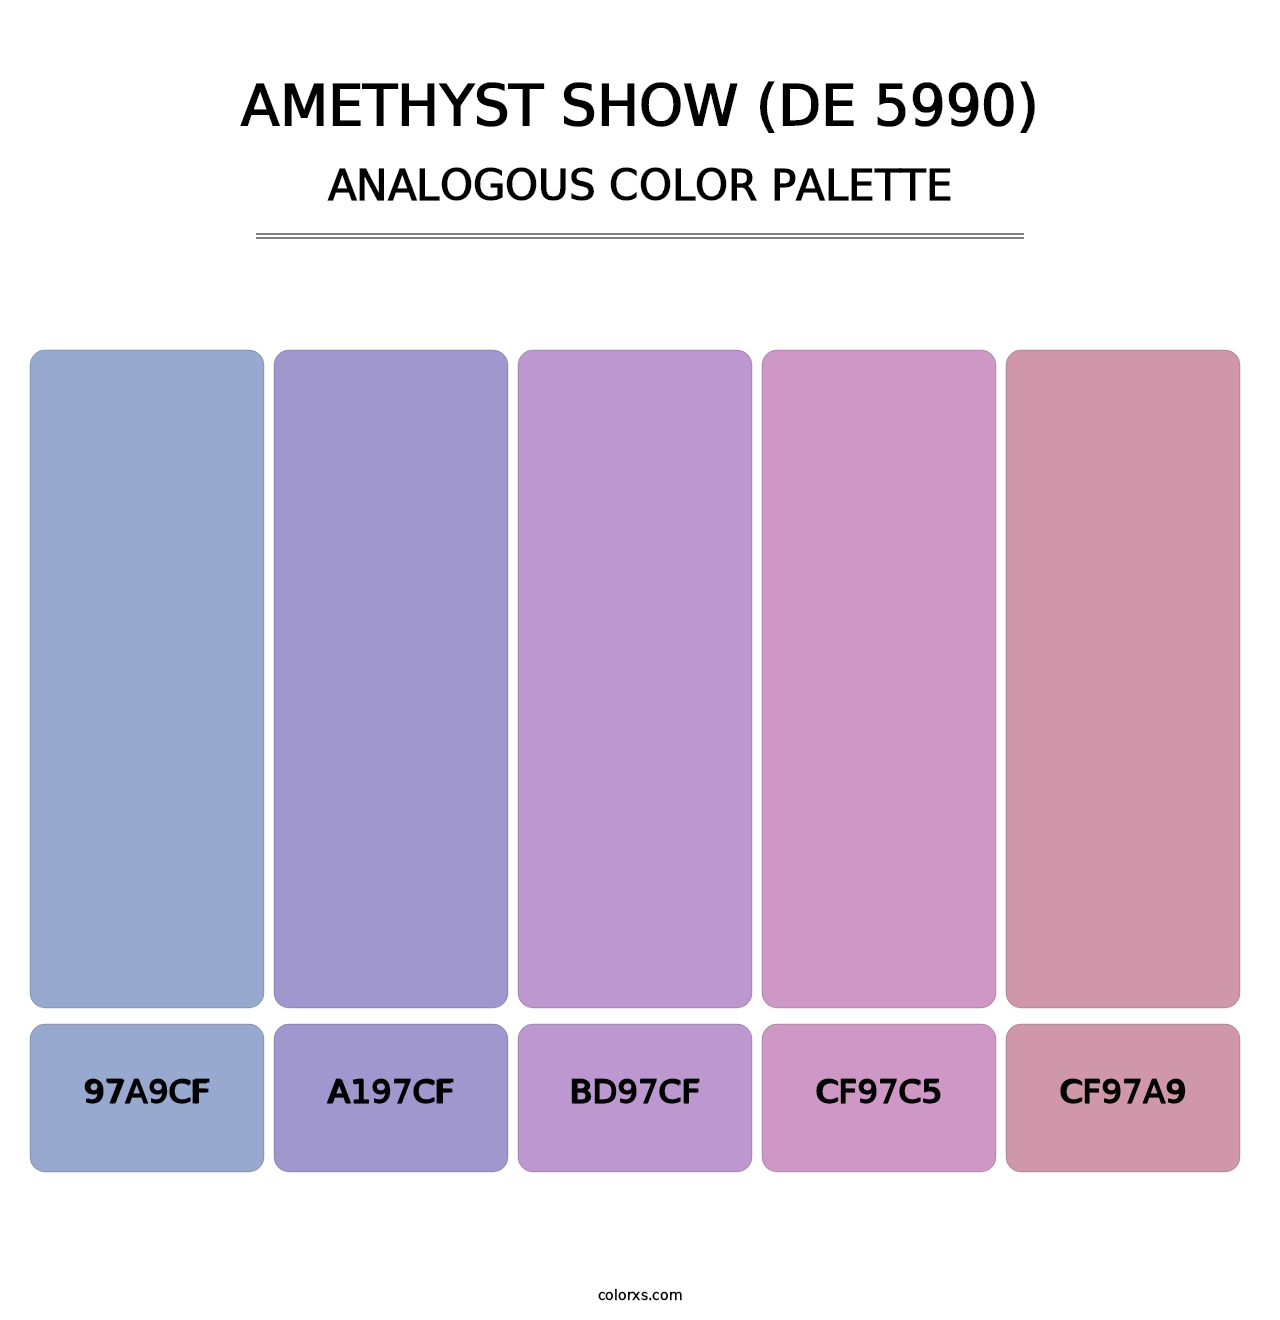 Amethyst Show (DE 5990) - Analogous Color Palette